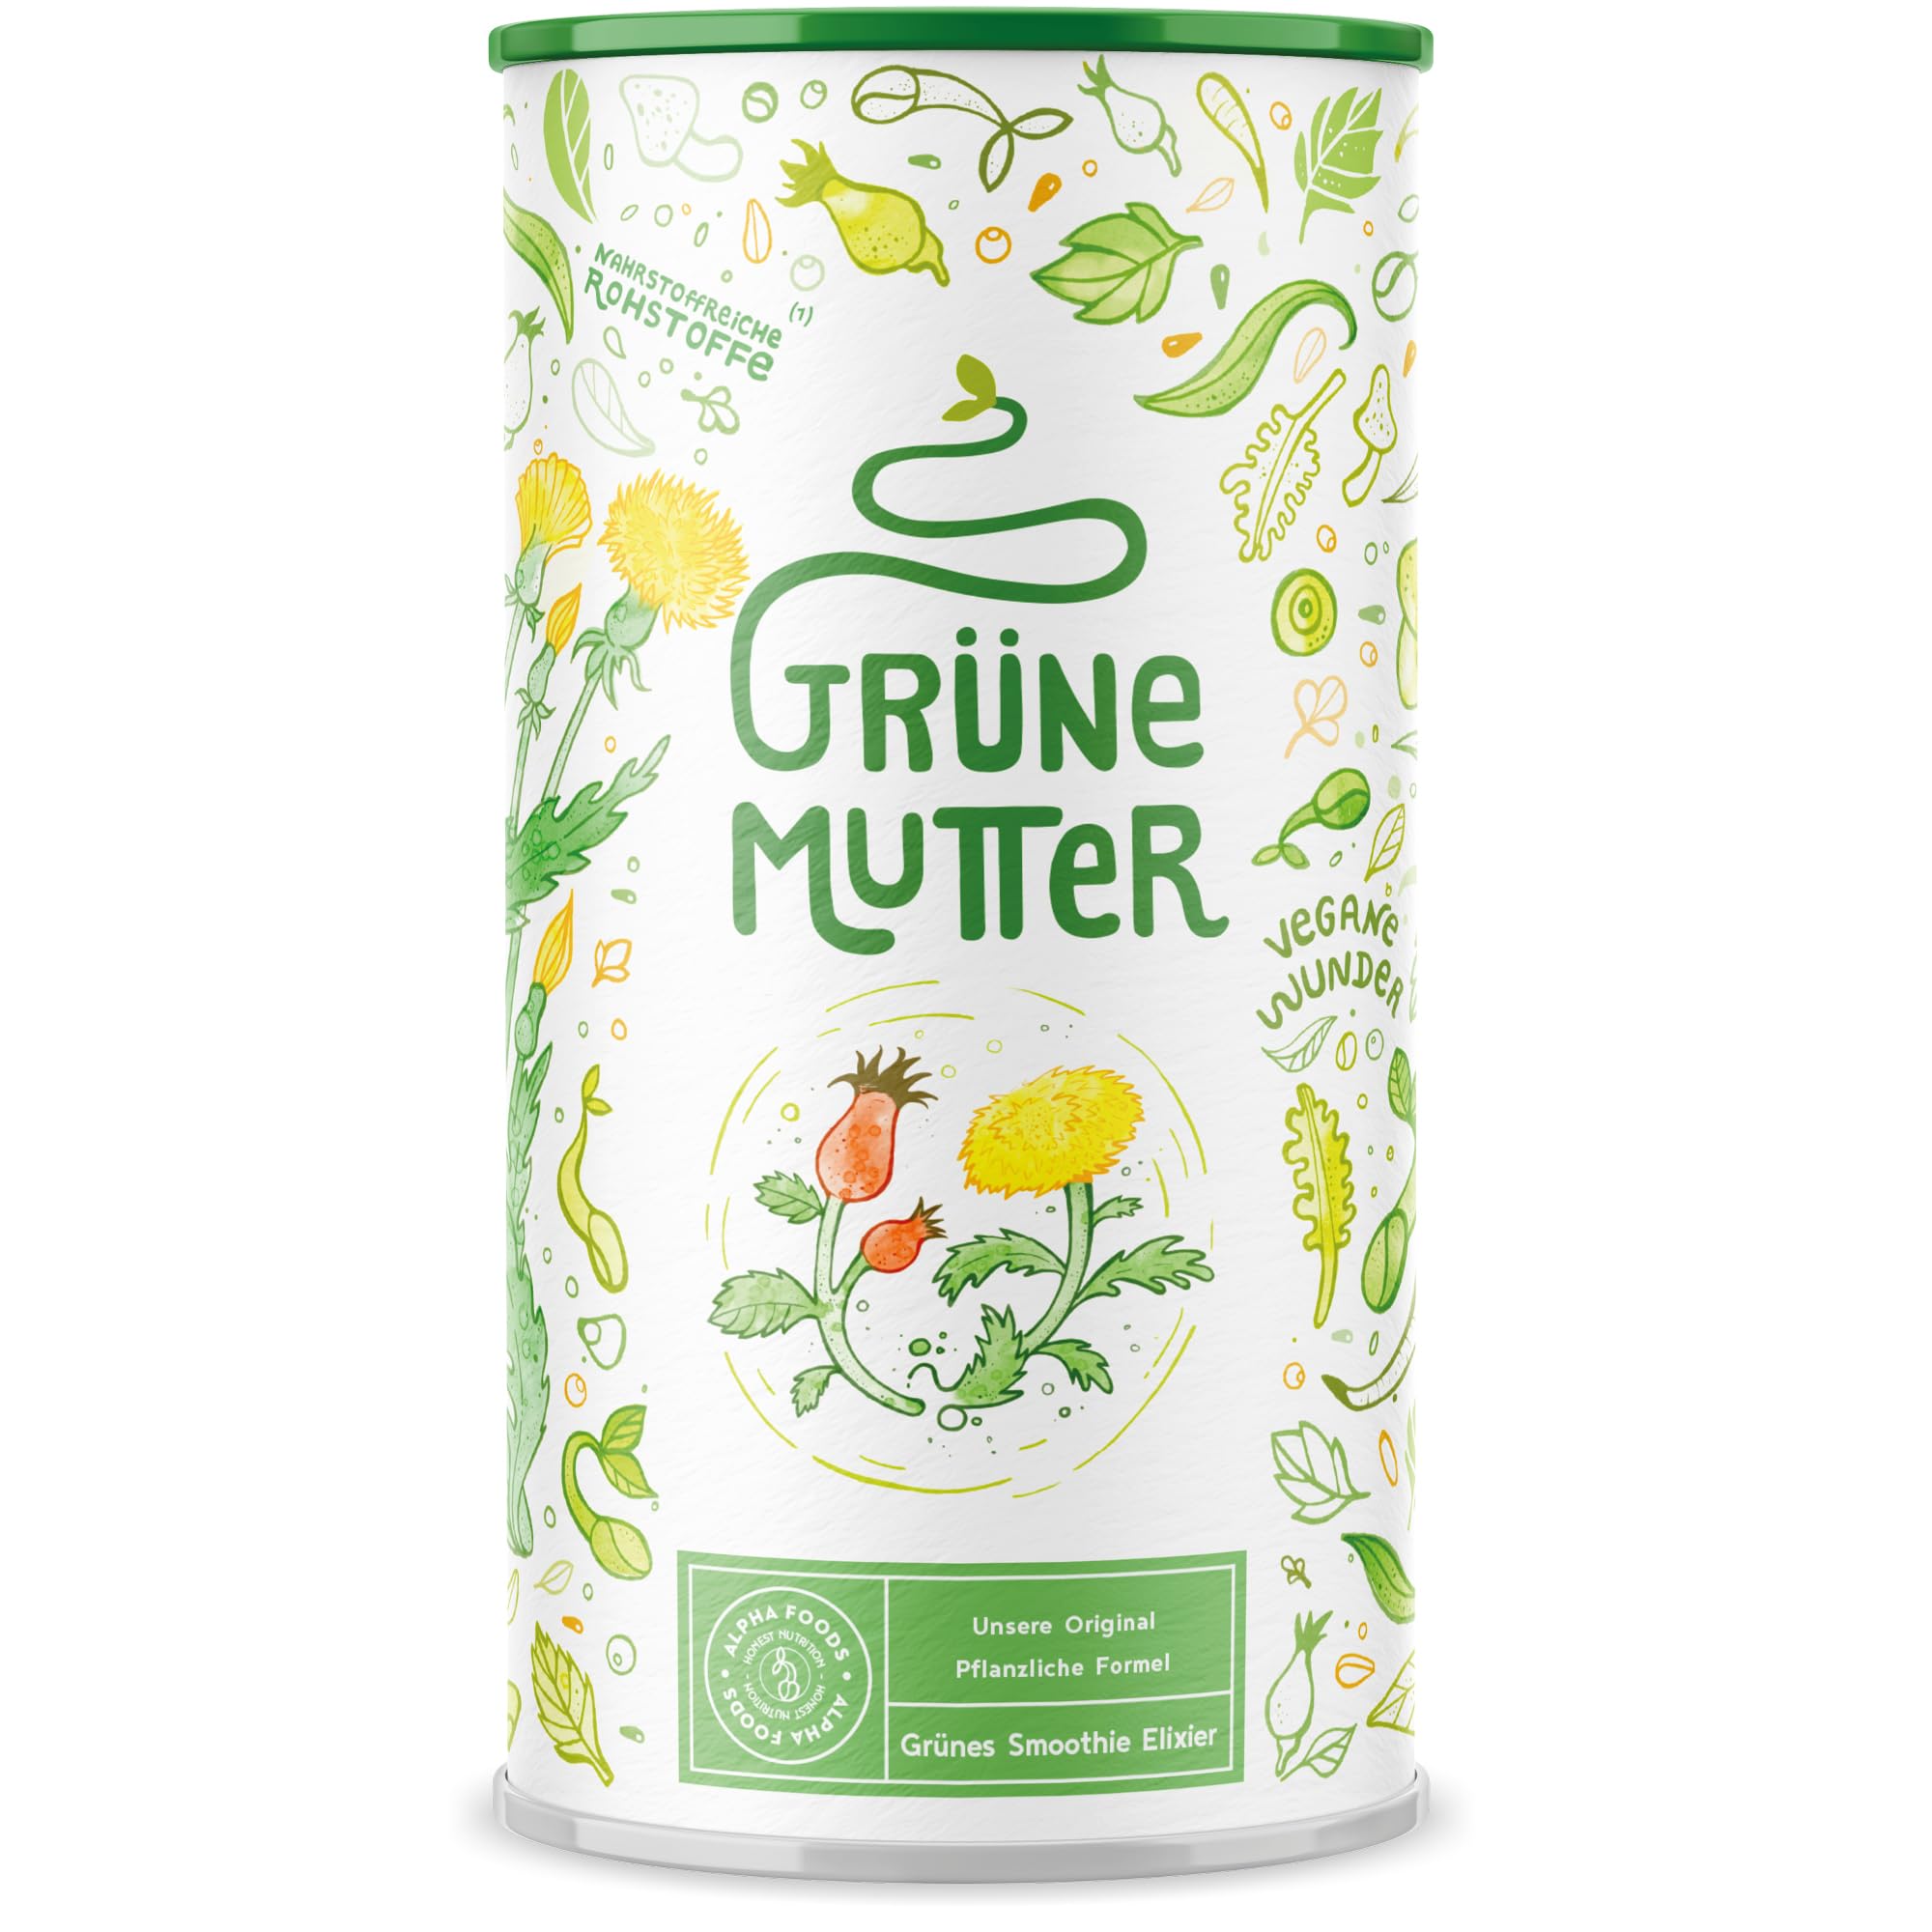 Grüne Mutter - Das Original - Greens Pulver - Coenzym Q10, Weizengras, Brennnessel, Mariendistel, Braunalge, Alfalfa, OPC und mehr - Smoothie Shake - 600g Pulver